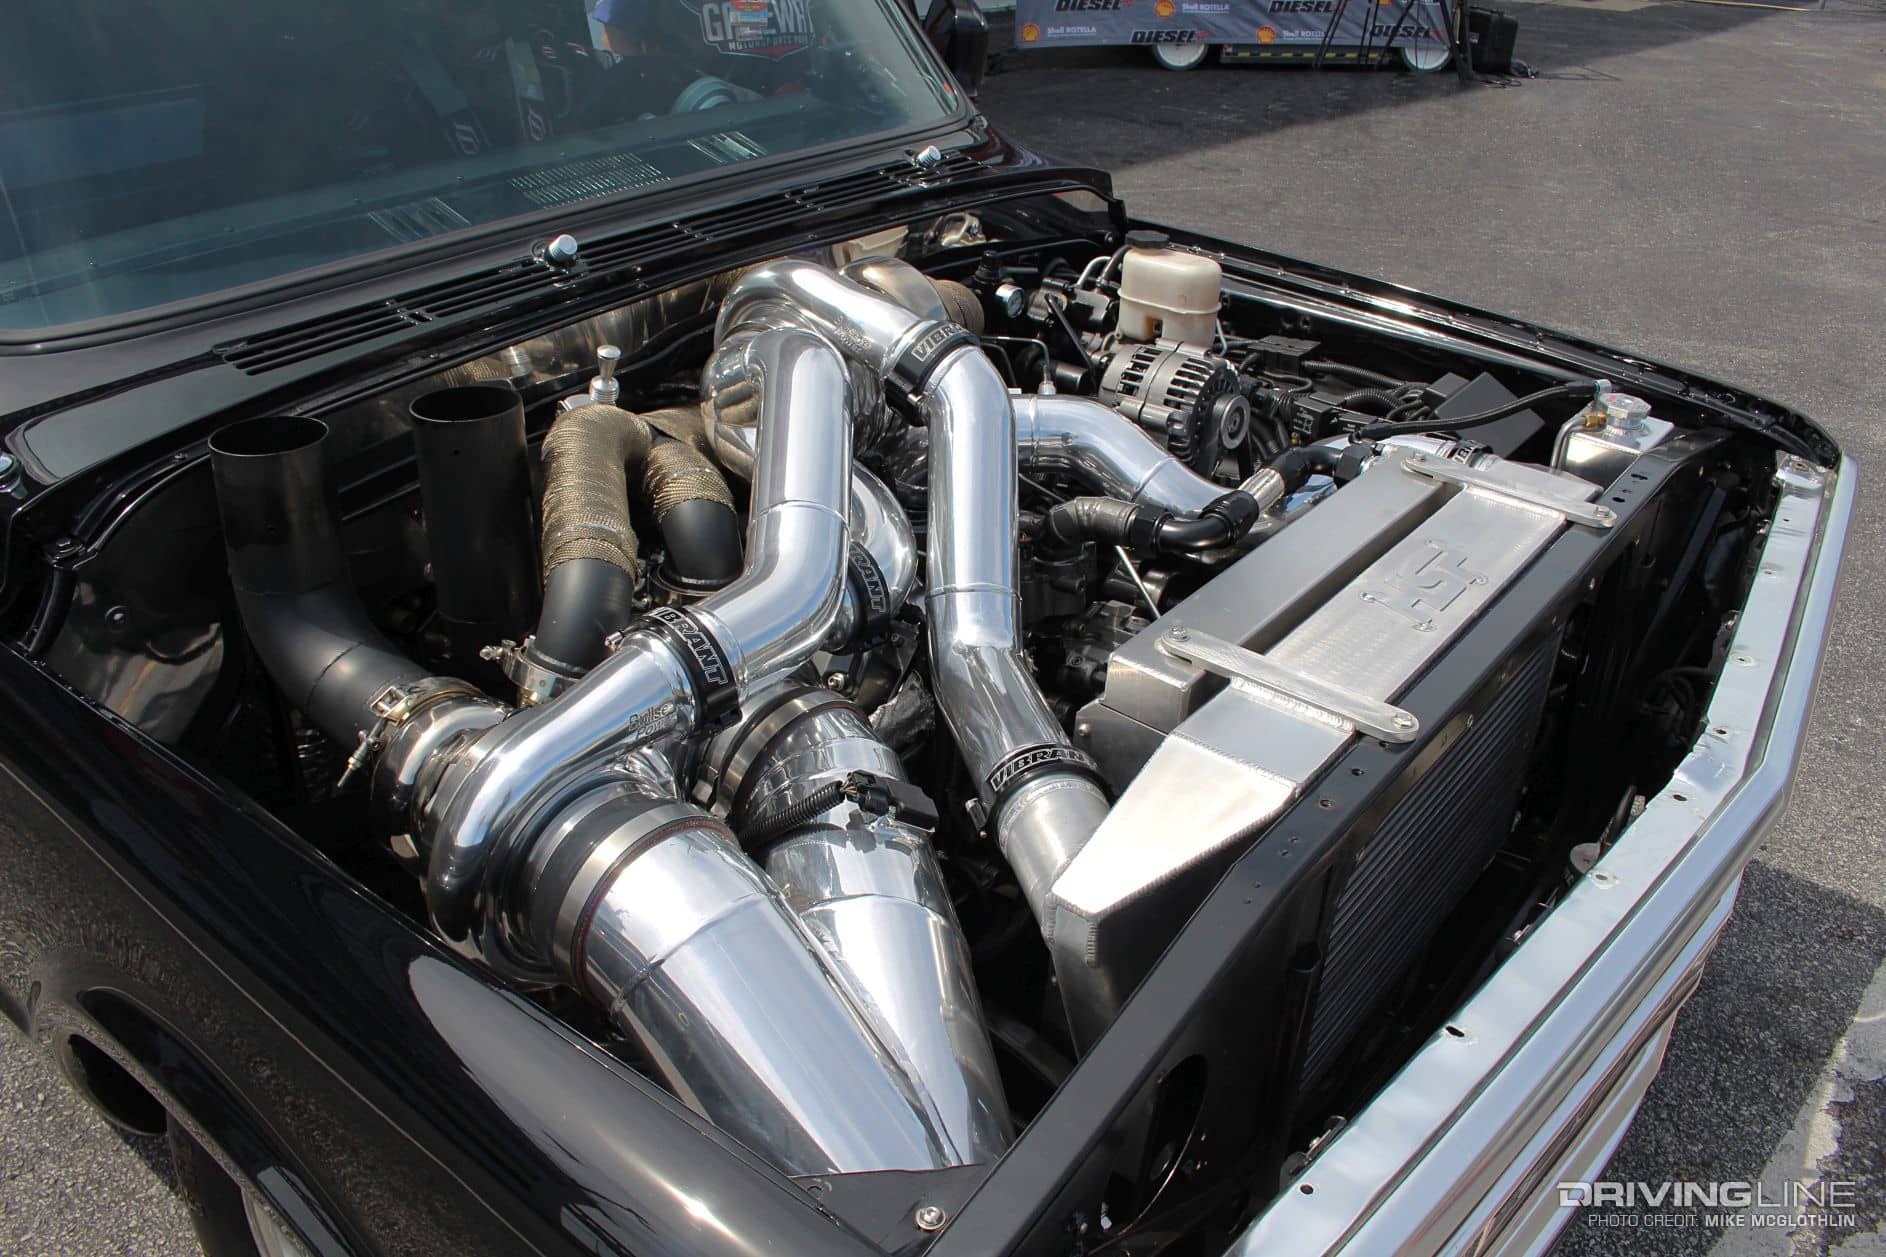 1969 Chevy C10 s trojitým turbo Duramax v motorovém prostoru